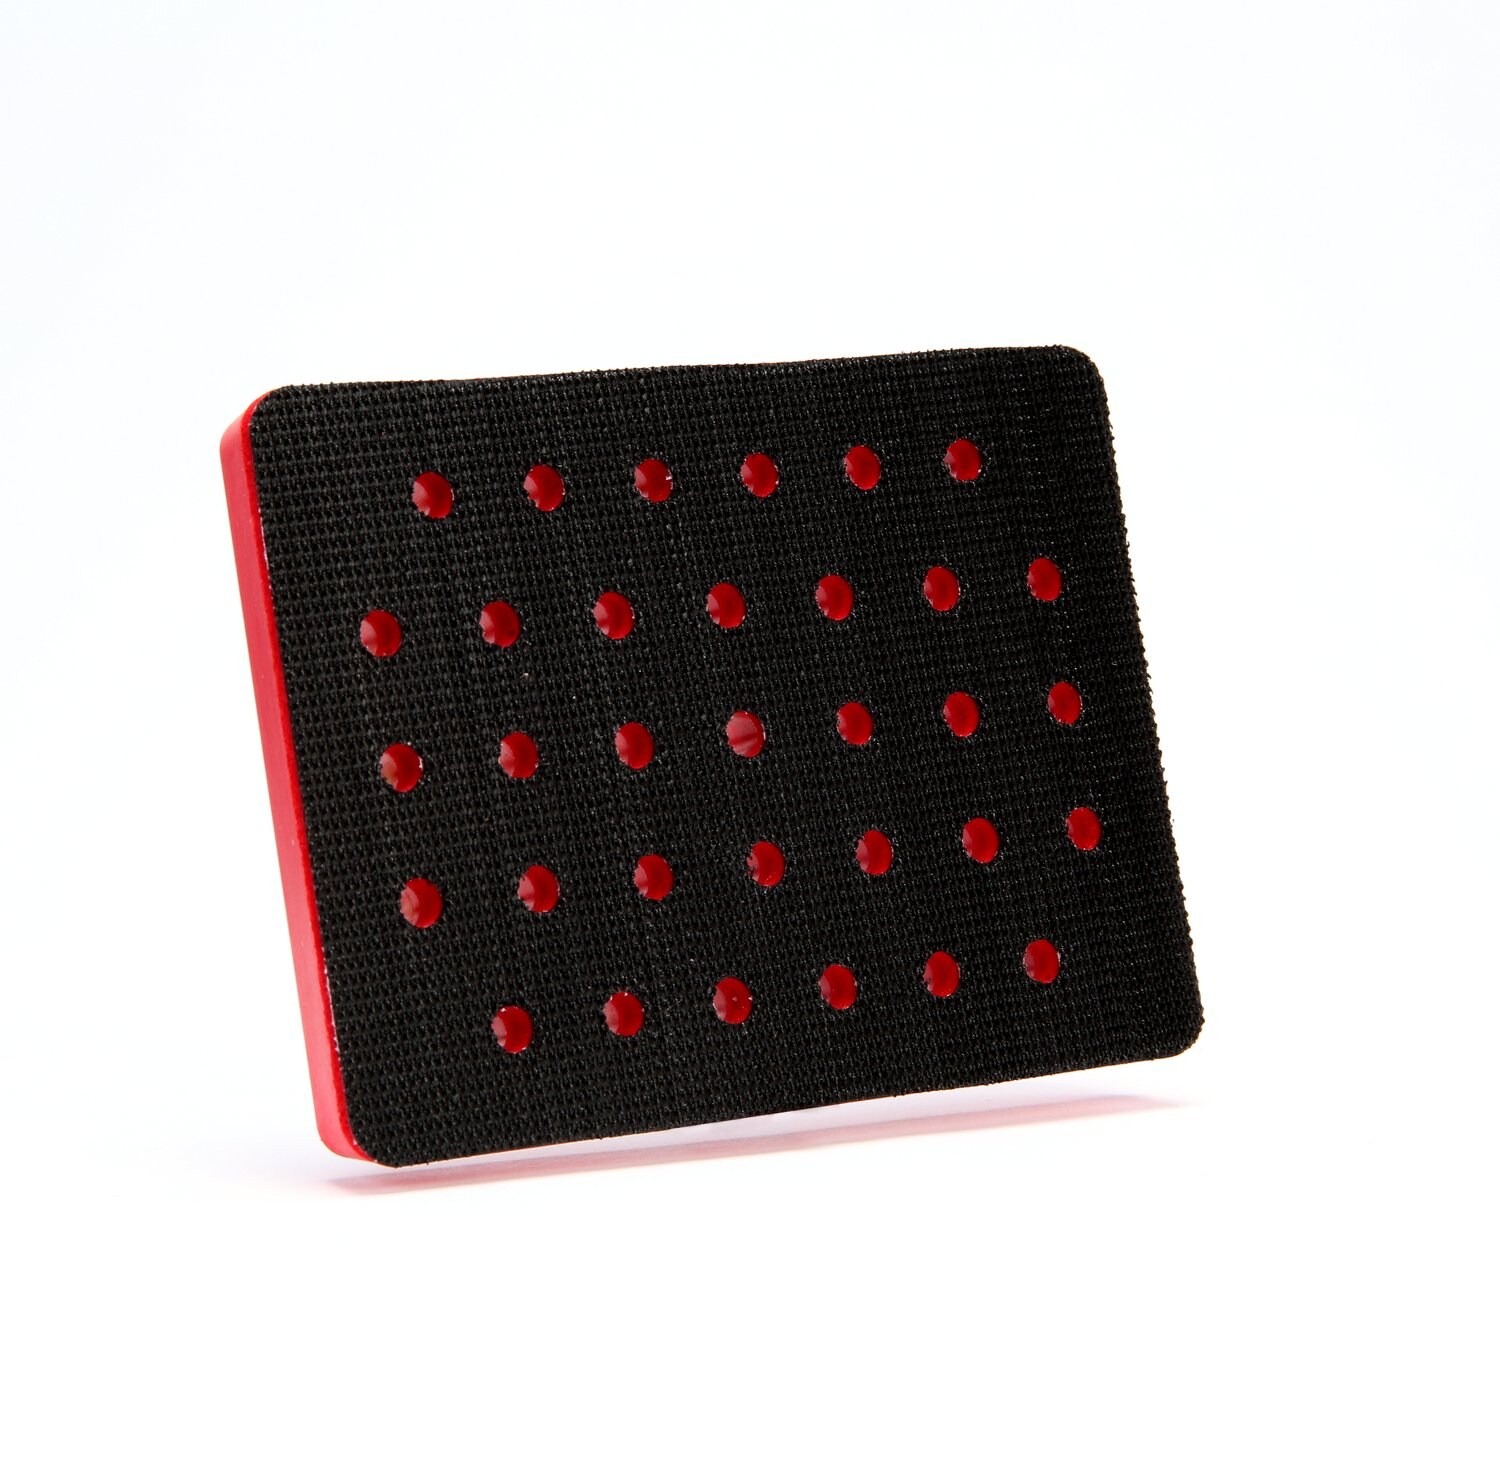 7000028151 - 3M Hookit Clean Sanding Pad 20435, 3 in x 4 in x 1/2 in 33 Holes Red
Foam, 10 ea/Case